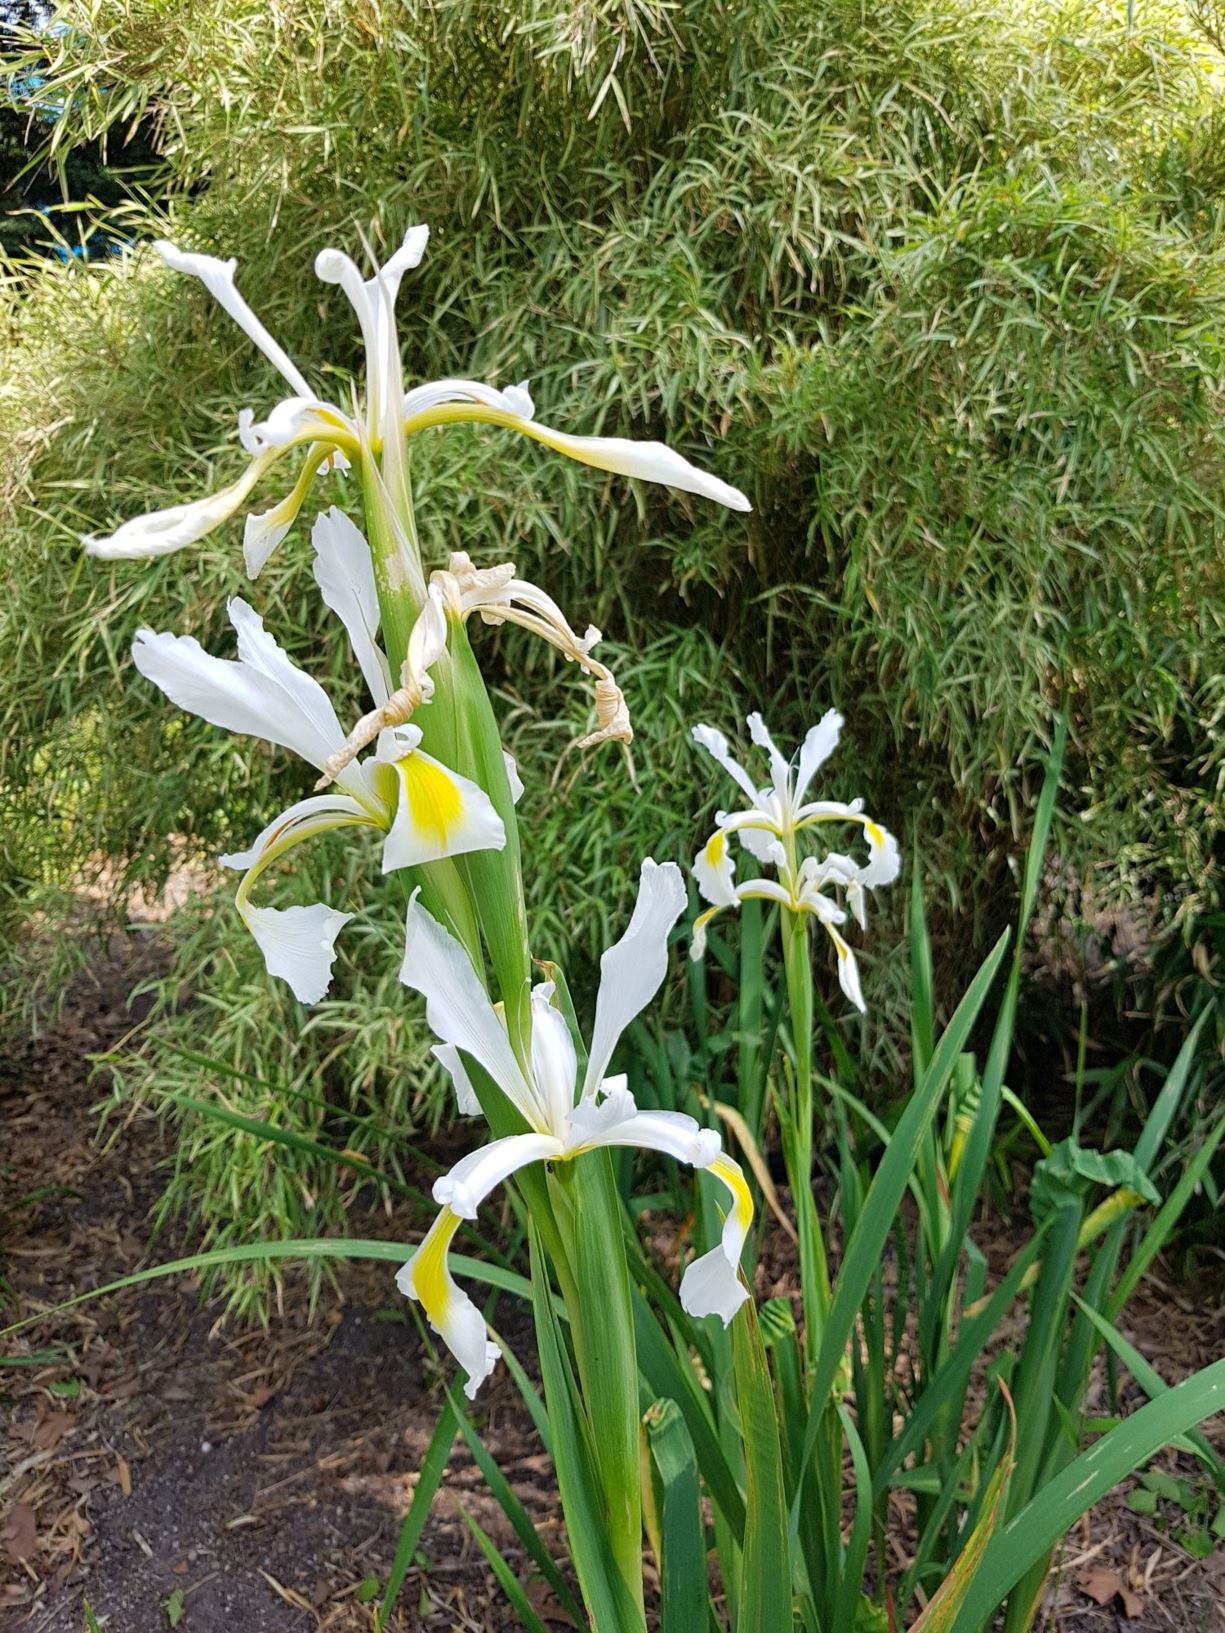 Iris orientalis - Turkish iris